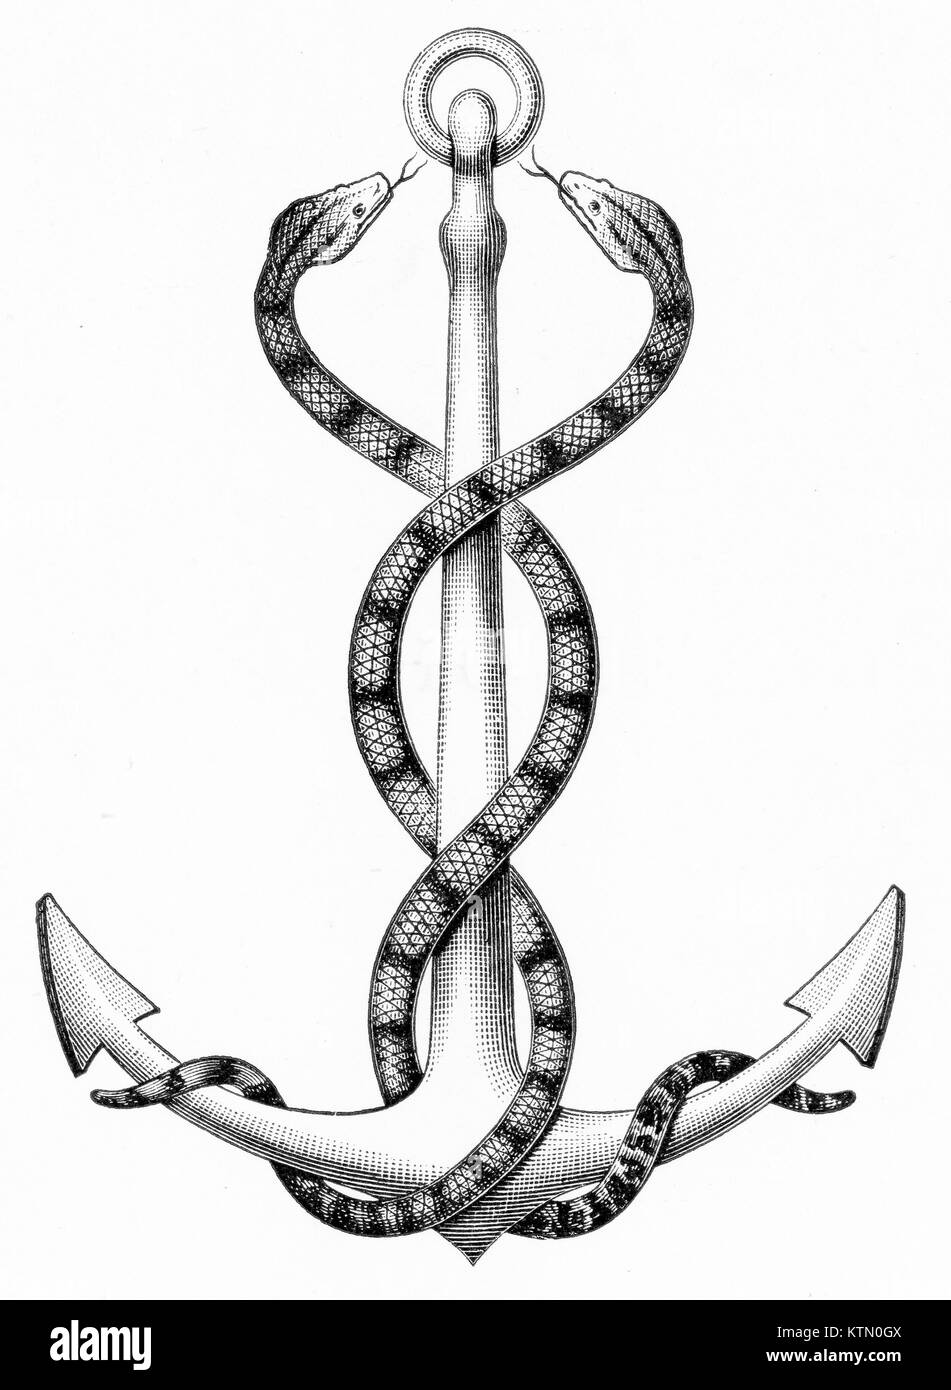 Grabado de dos serpientes entrelazadas alrededor de un ancla. A partir de un original grabado en contornos de Zoología de Thomson, 1906 Foto de stock